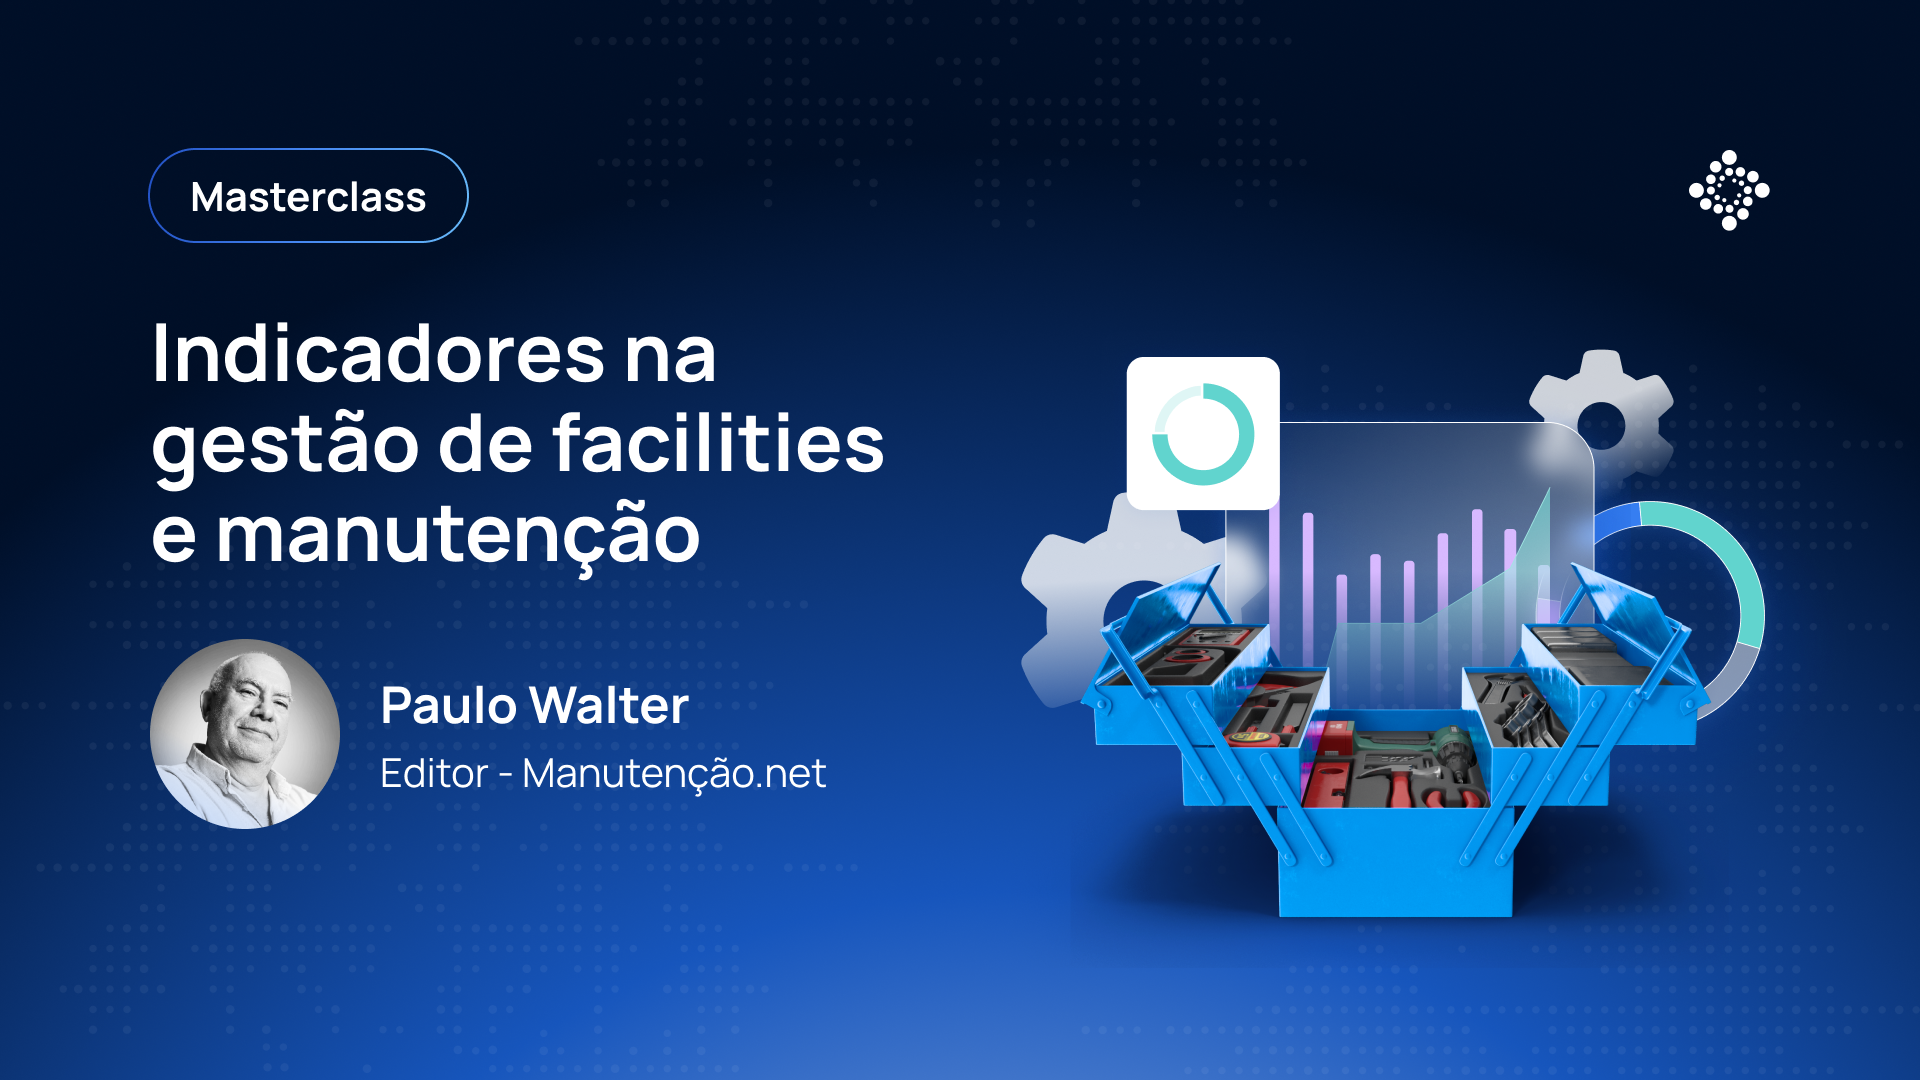 Masterclass: Indicadores na gestão de facilities e manutenção - Paulo Walter